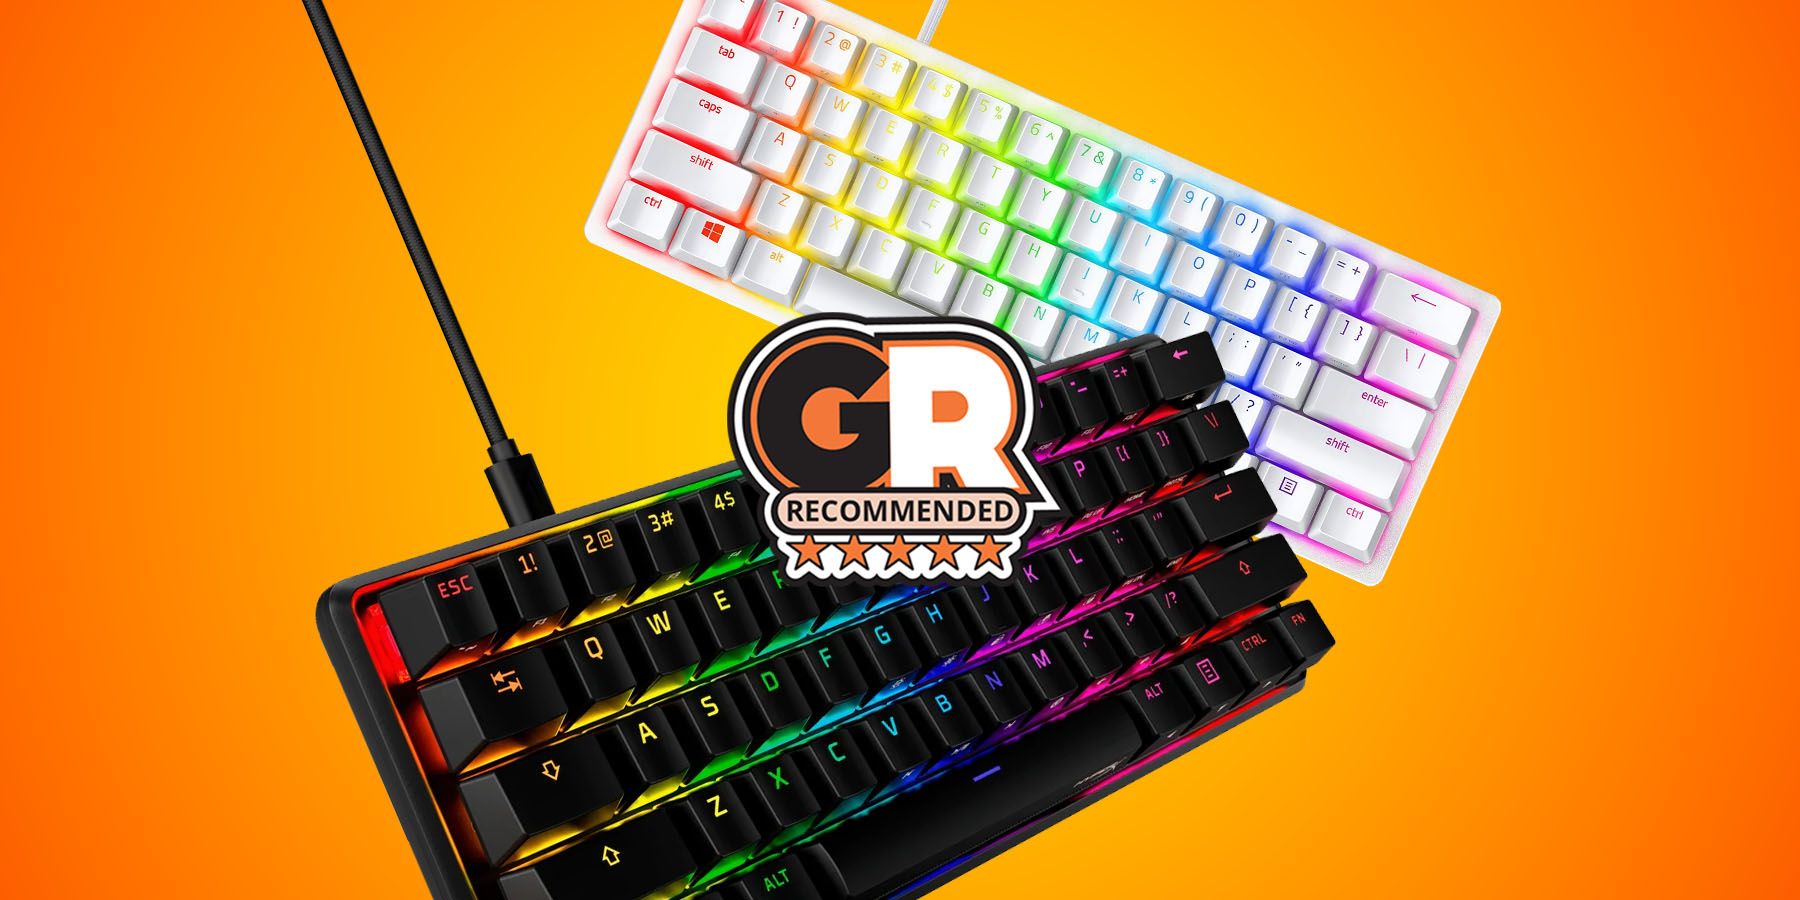 Magma Mini 60% RGB Gaming Keyboard